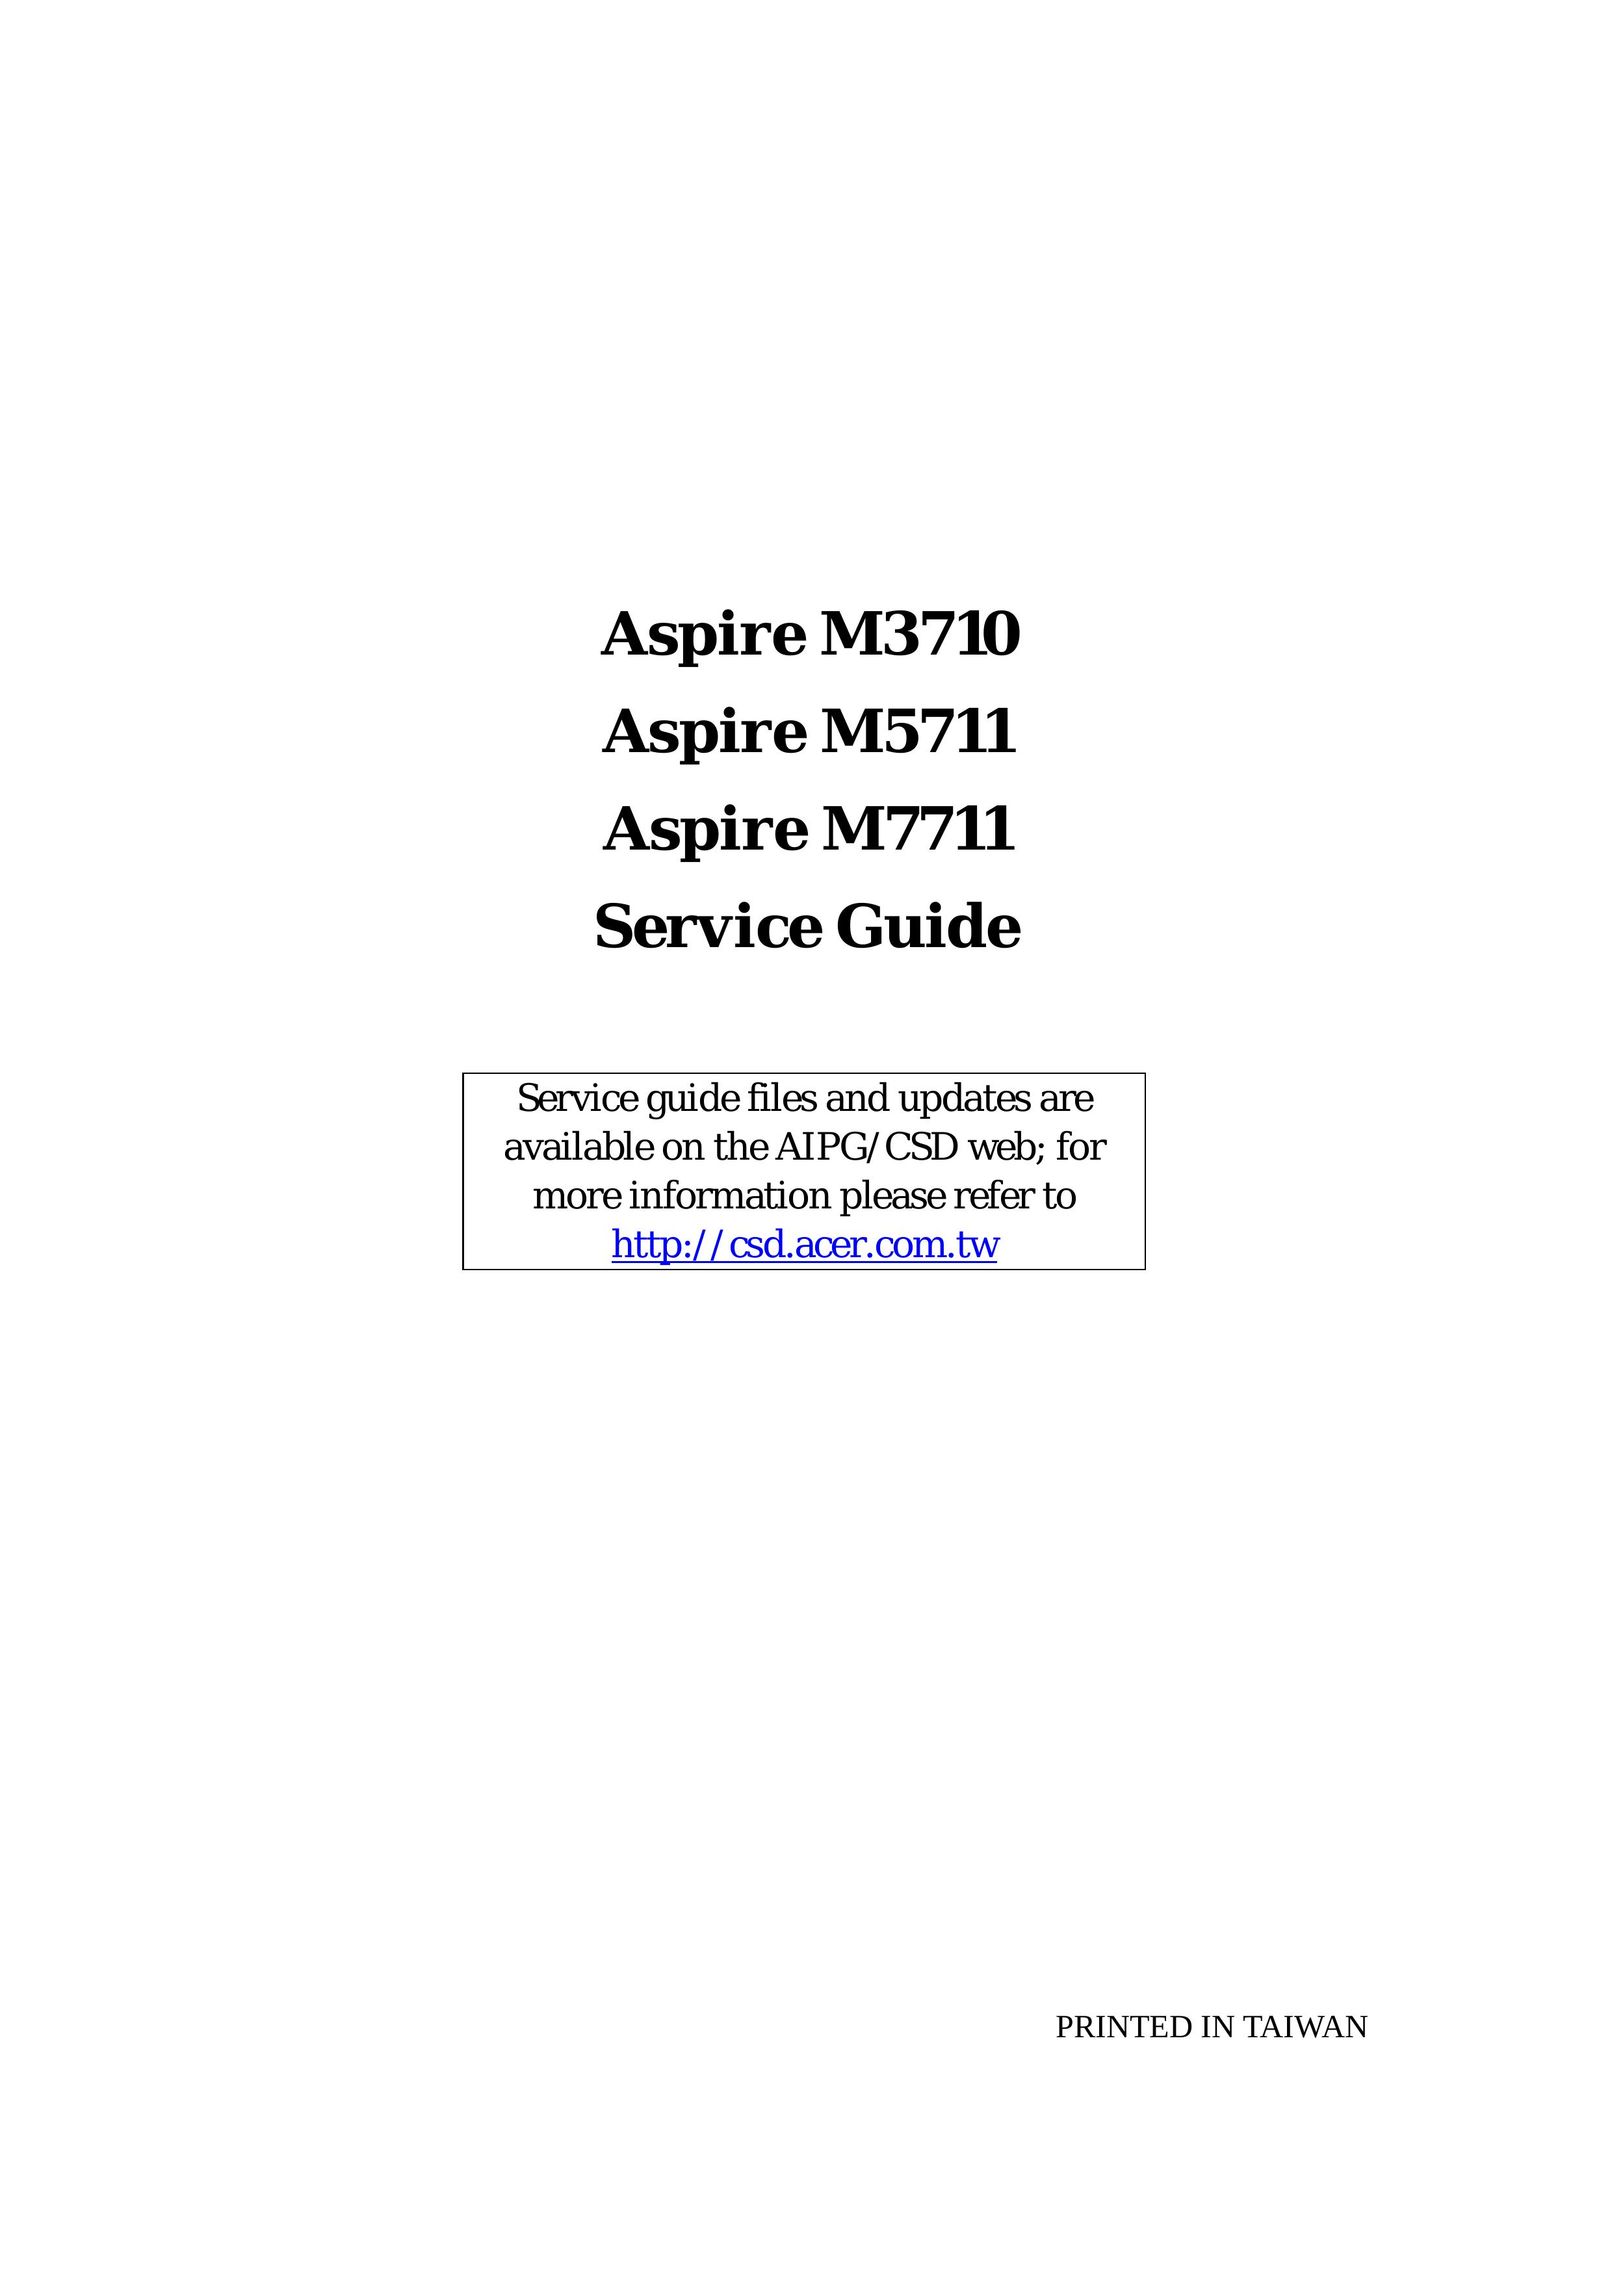 Aspire Digital M7711 Computer Hardware User Manual